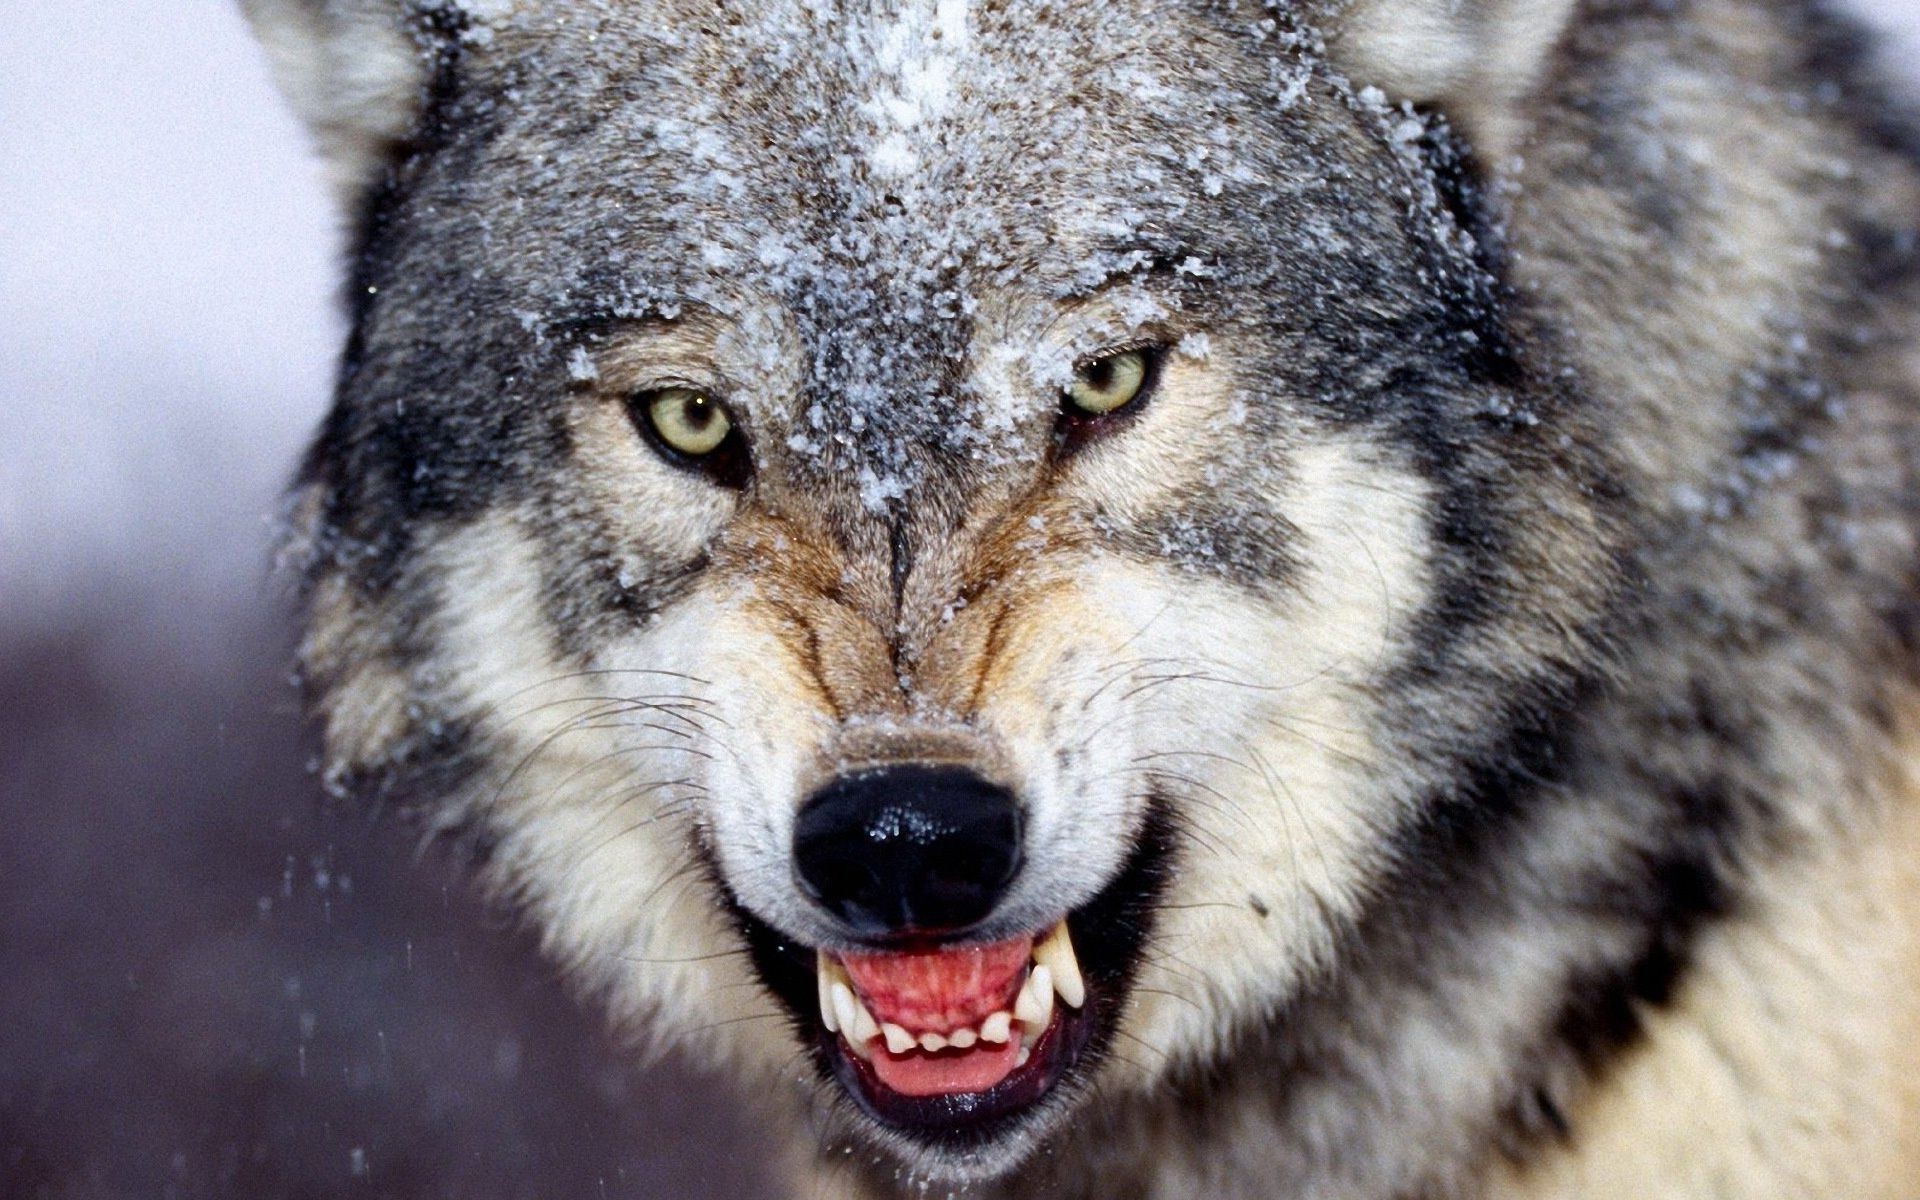 животные млекопитающее дикой природы хищник животное дикий зоопарк портрет природа мясоед мех глаз волк зубы глава опасность лицо рот большой просмотр охотник